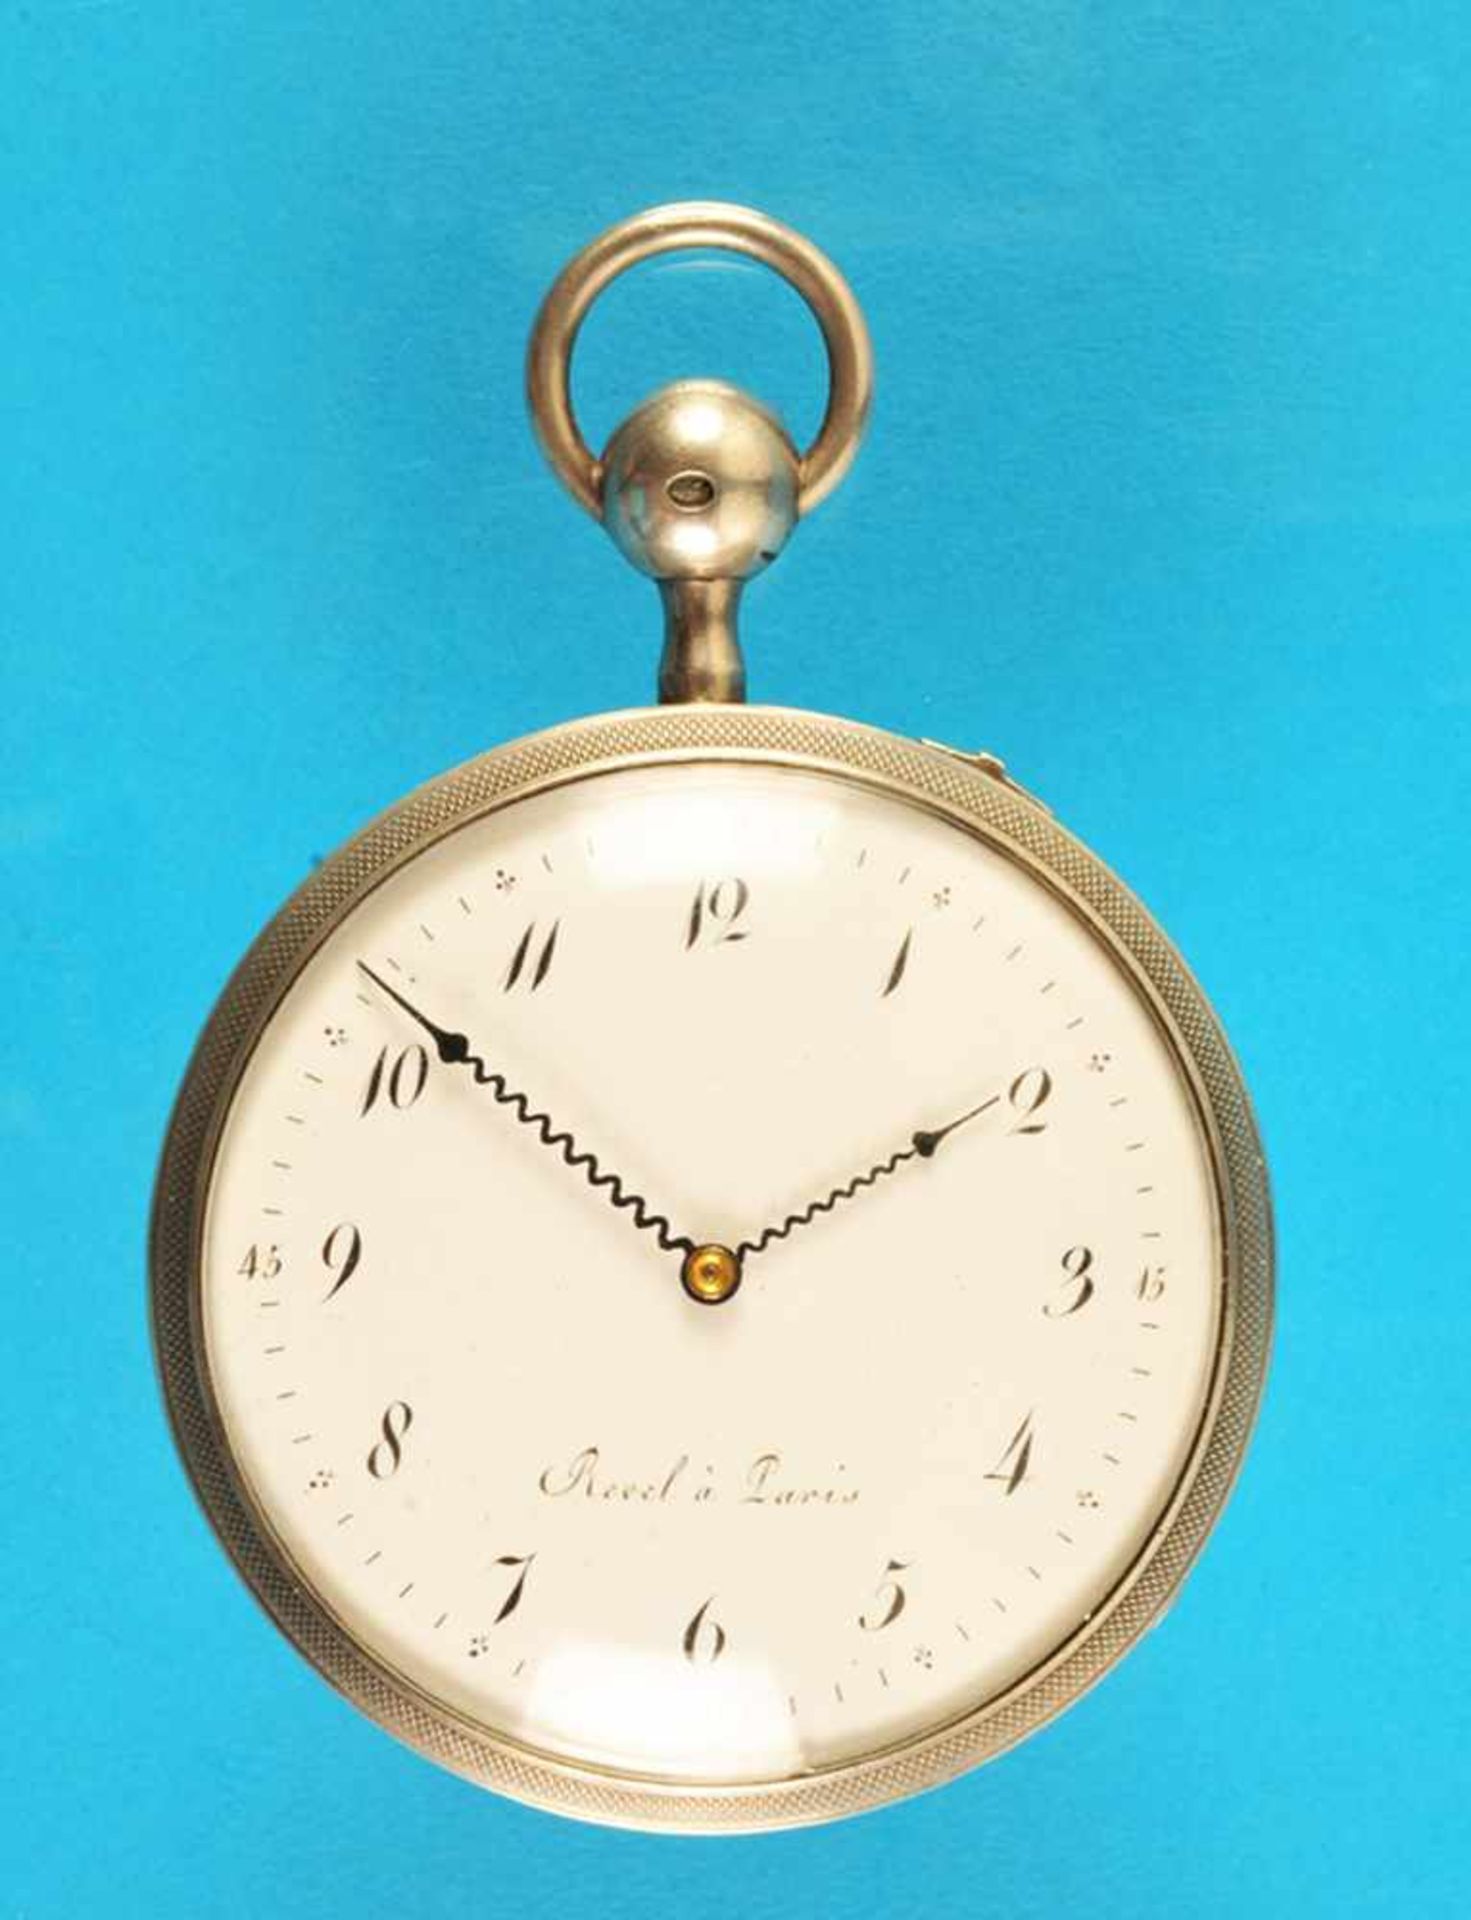 Silver pocket watch with cylinder escapement und quarter repetition, Revel á ParisSilbertaschenuhr